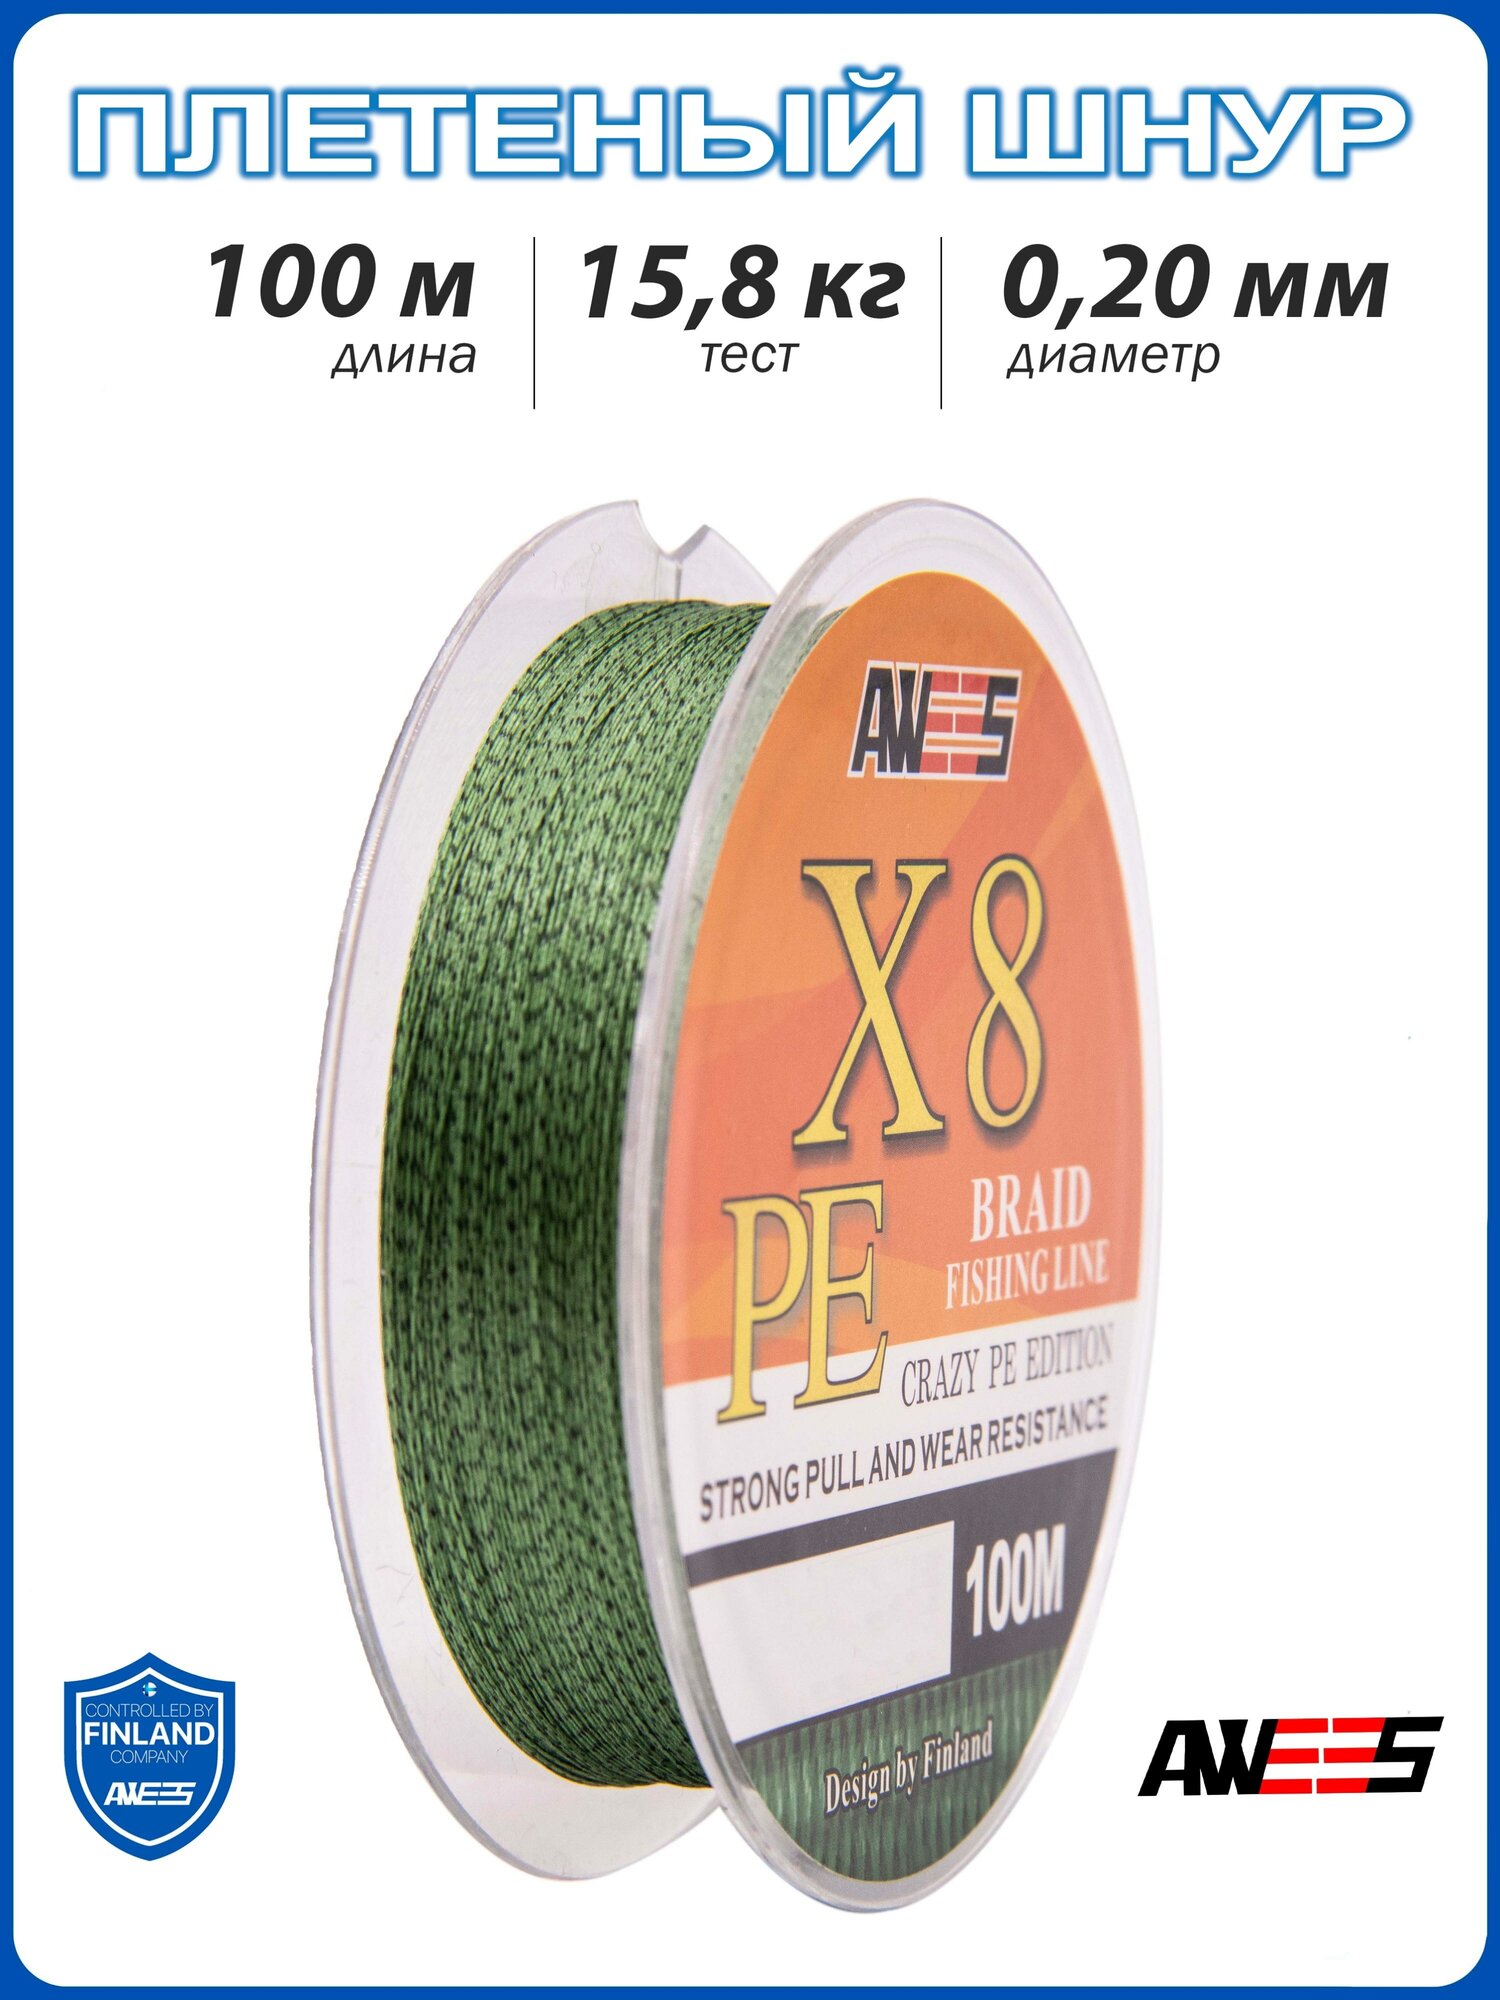 Плетеный шнур 8-жильный AWEES PE-X8 0.20, тест 15.8 кг, 100 м, камуфлированый зелёный/плетёнка/леска плетеная/леска/шнур для рыбалки